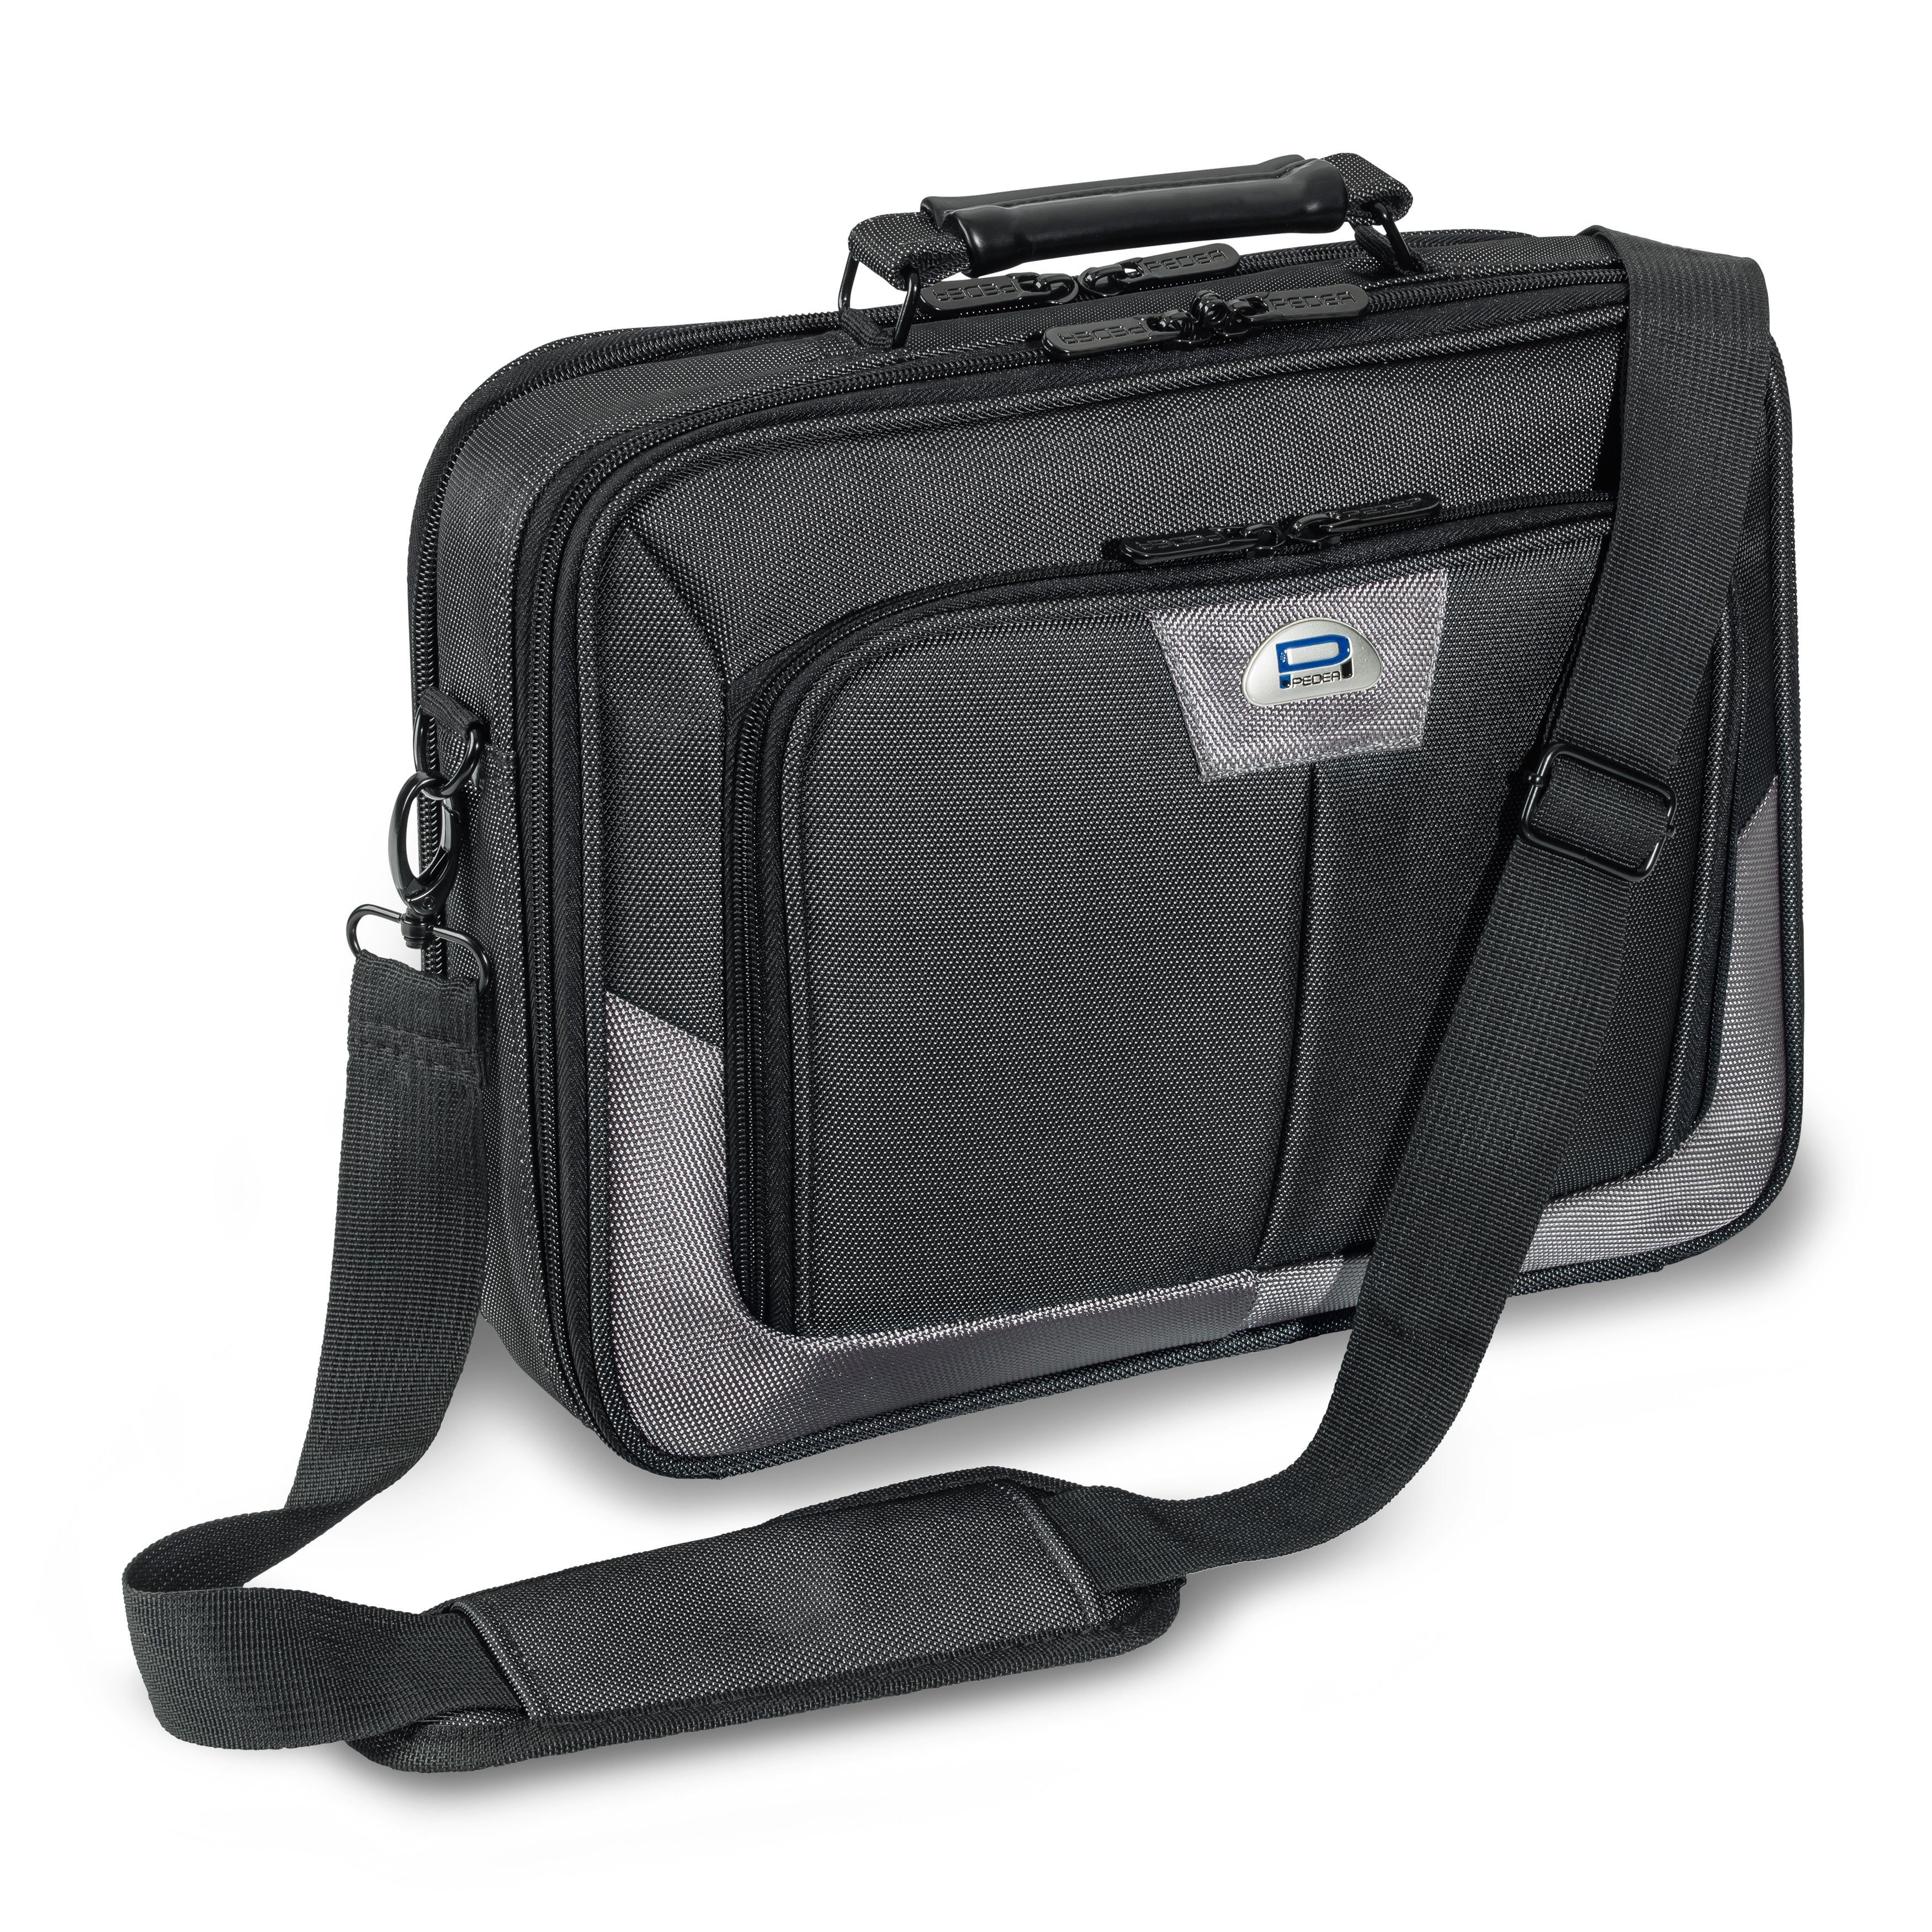 PEDEA Laptoptasche Premium (13,3 Zoll (33,8 cm), stabiler Schutzrahmen, dicke Polsterung, wasserabweisende Materialien grau